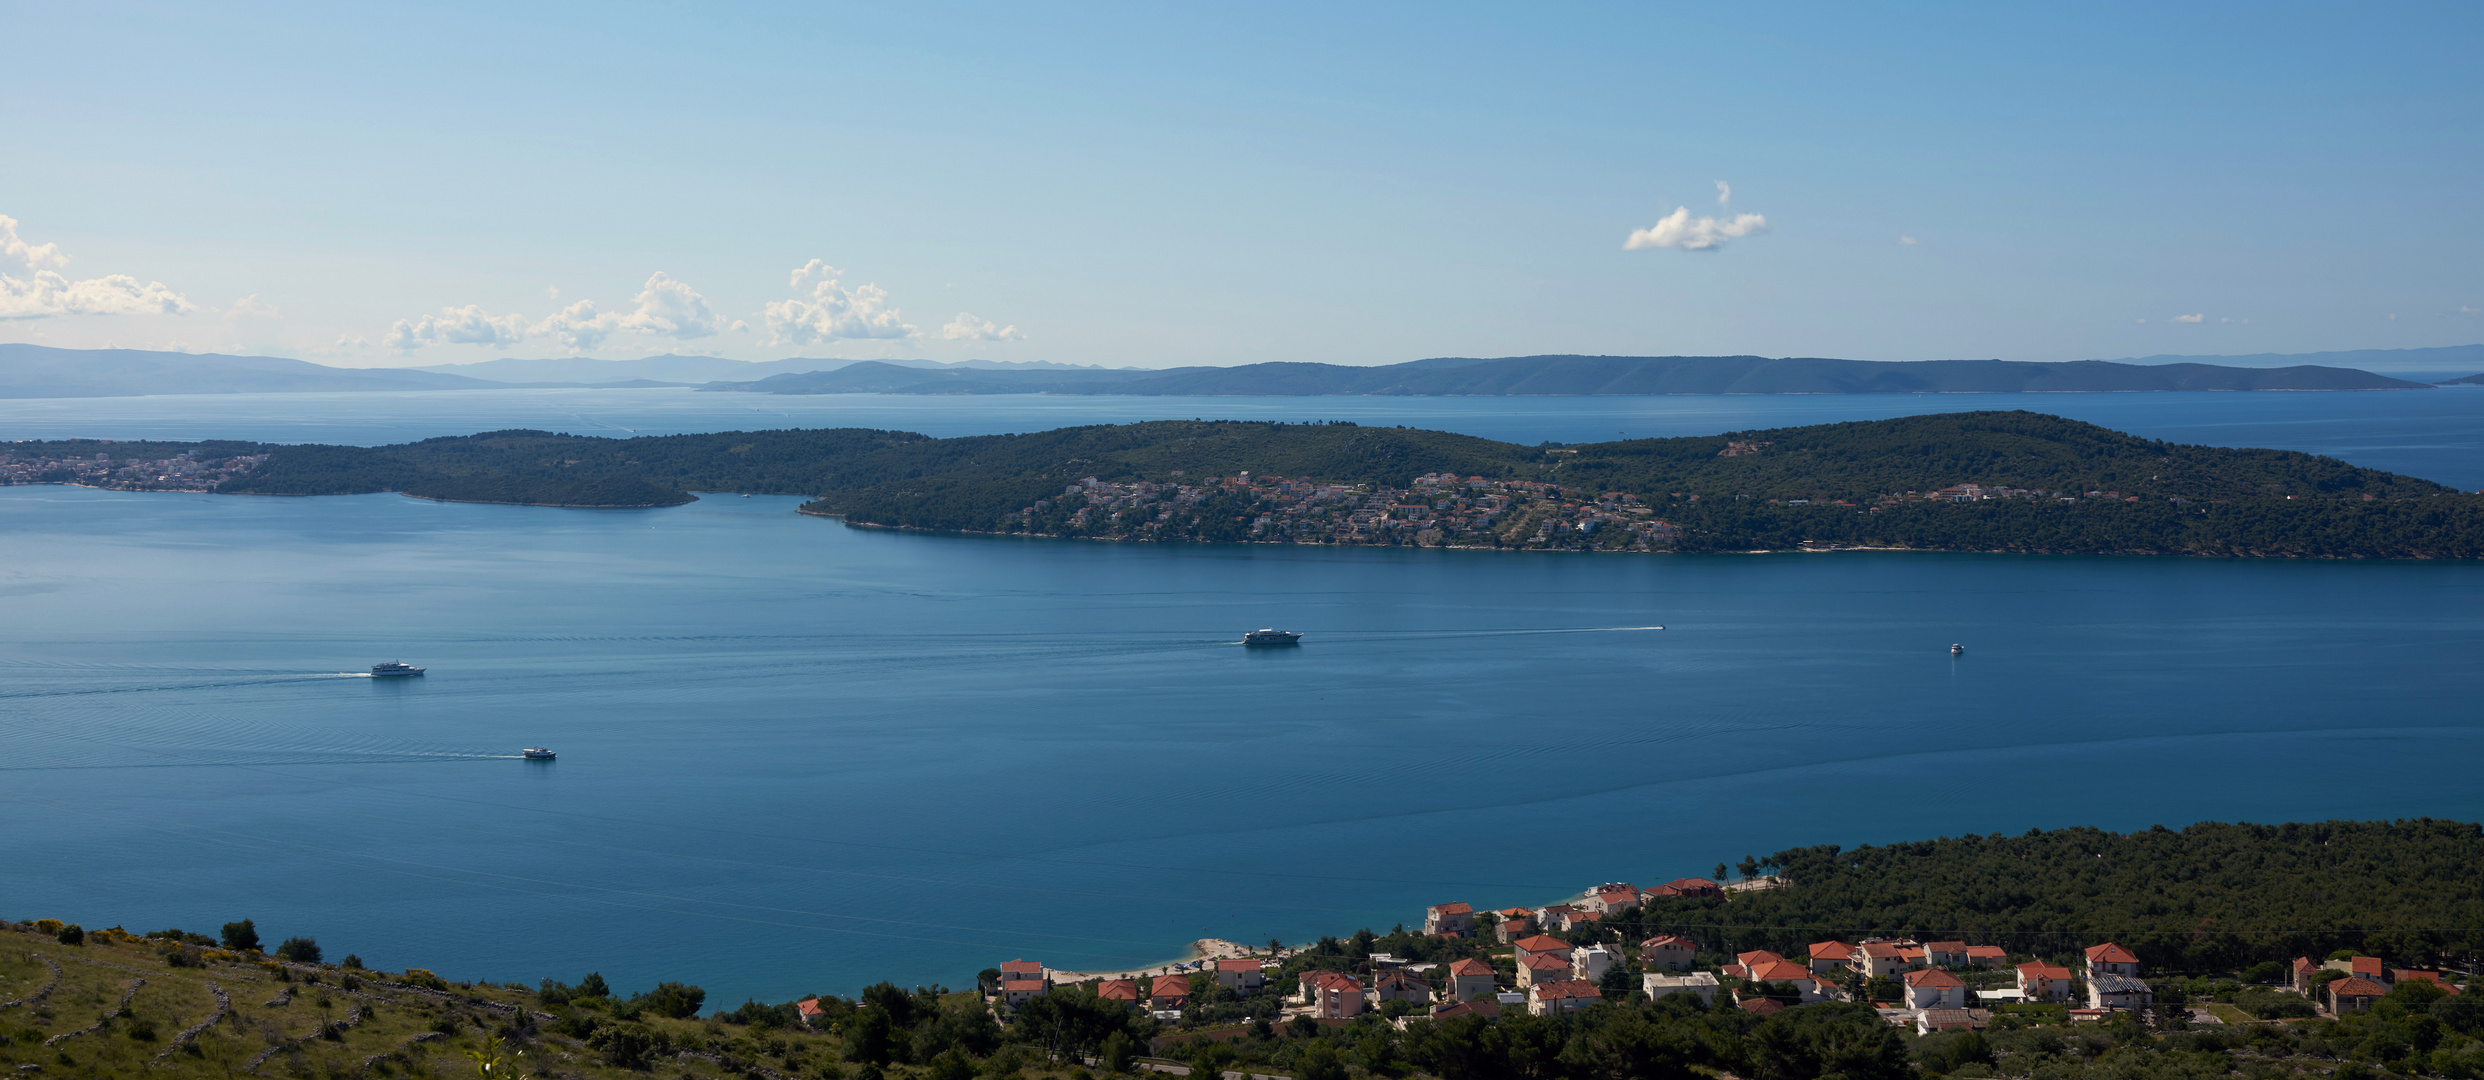 Kroatien, das Land der über eintausend Inseln